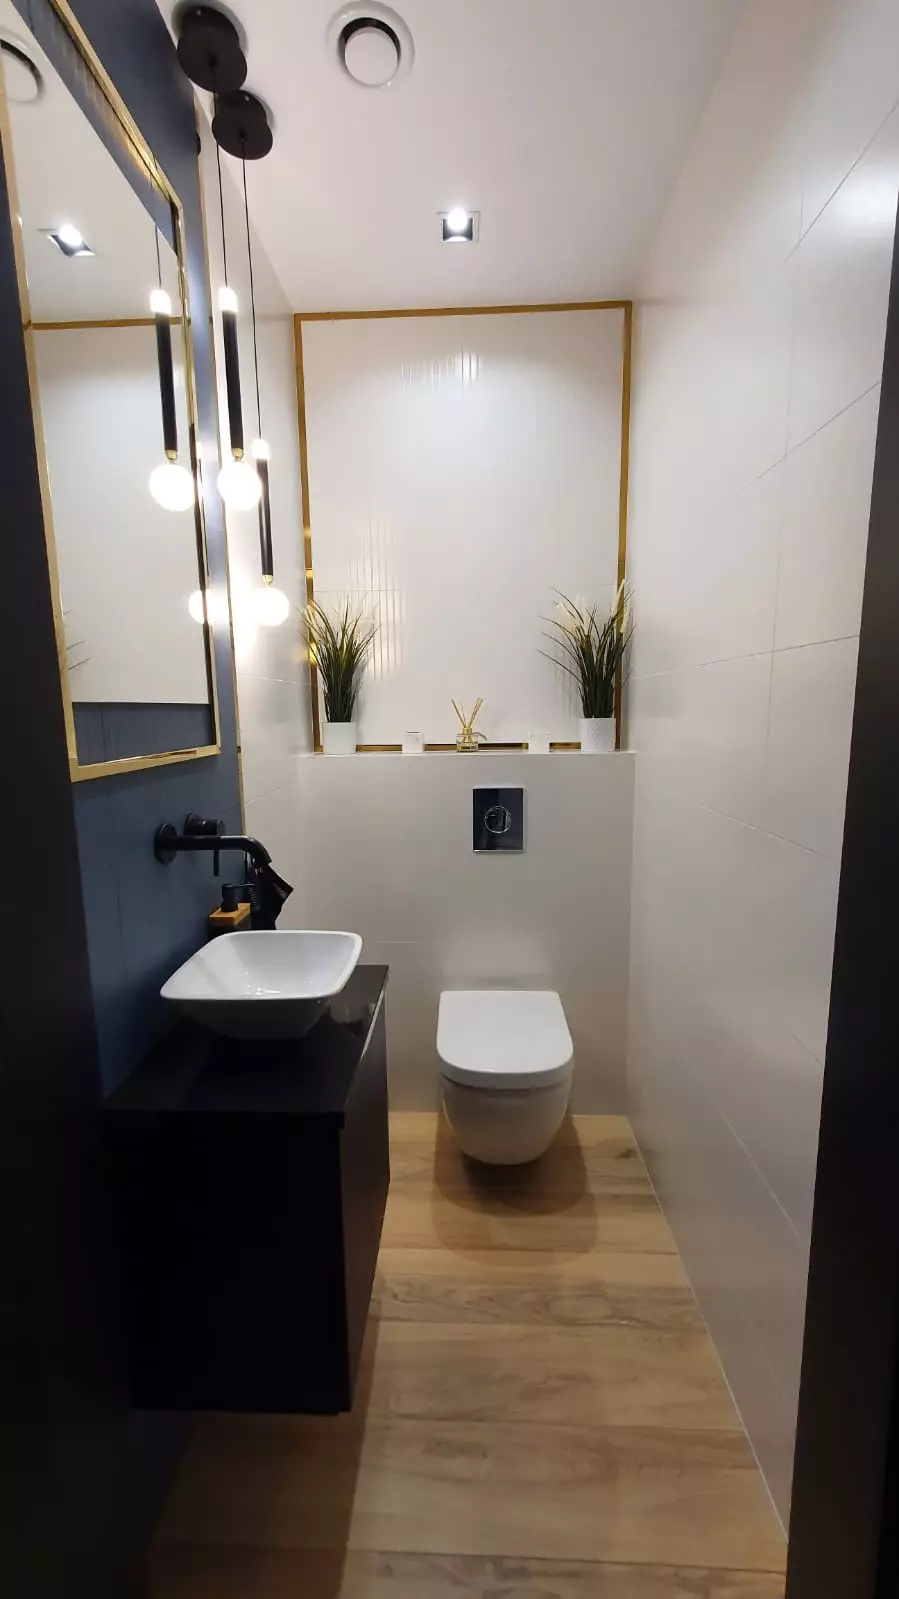 Nowoczesna piękna łazienka zaprojektowana i wykonana na indywidualne zamówienie w Krakowie.